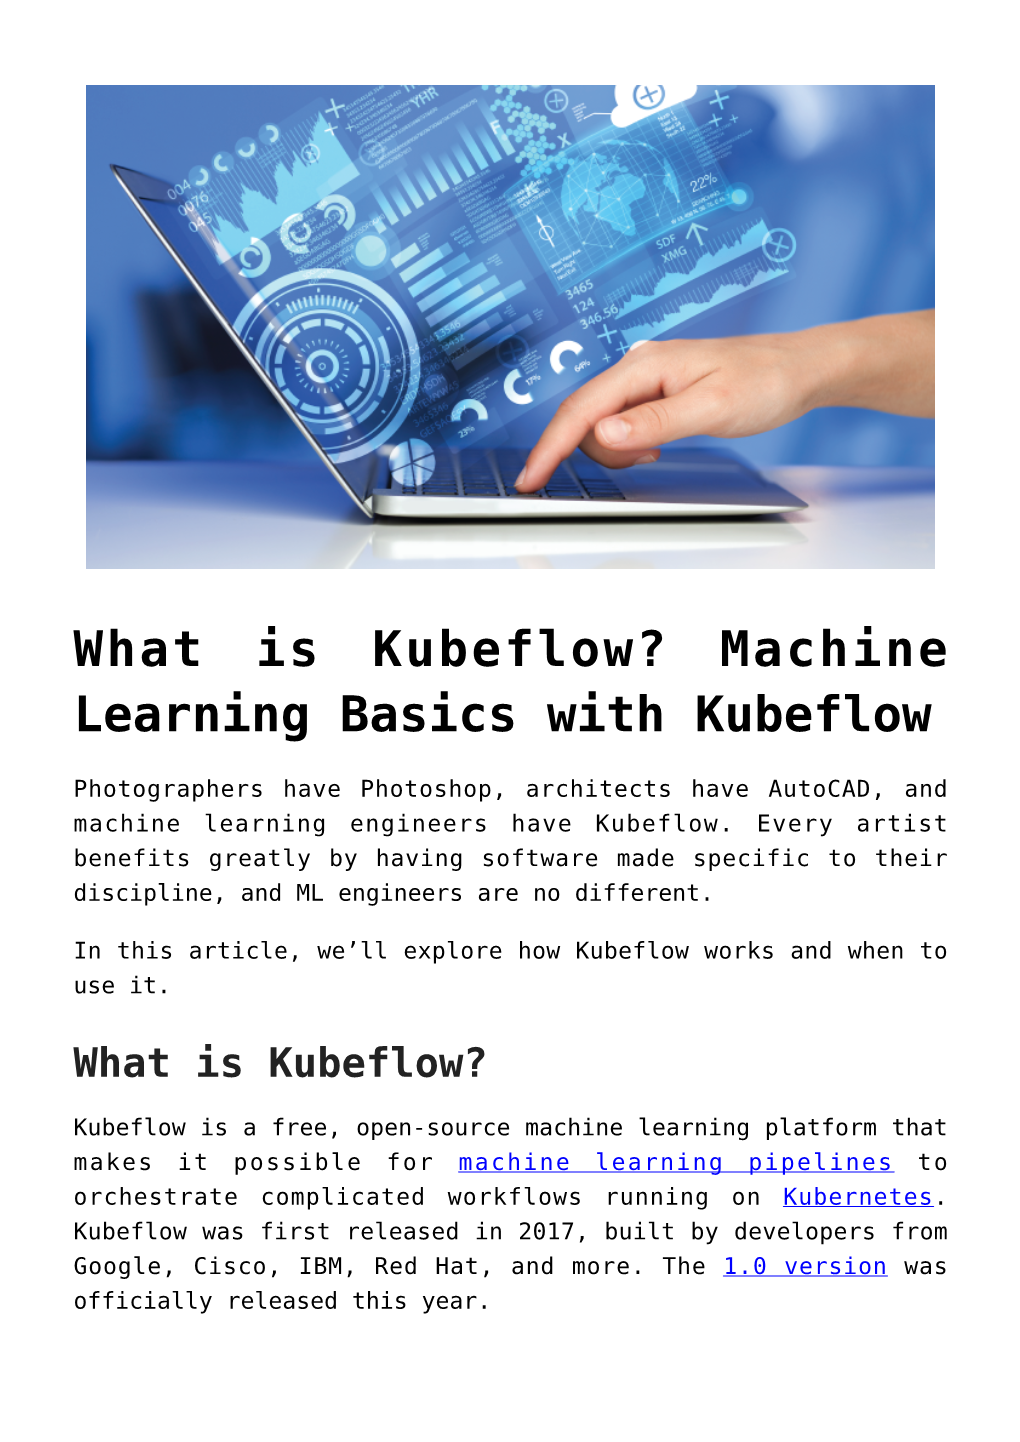 Machine Learning Basics with Kubeflow